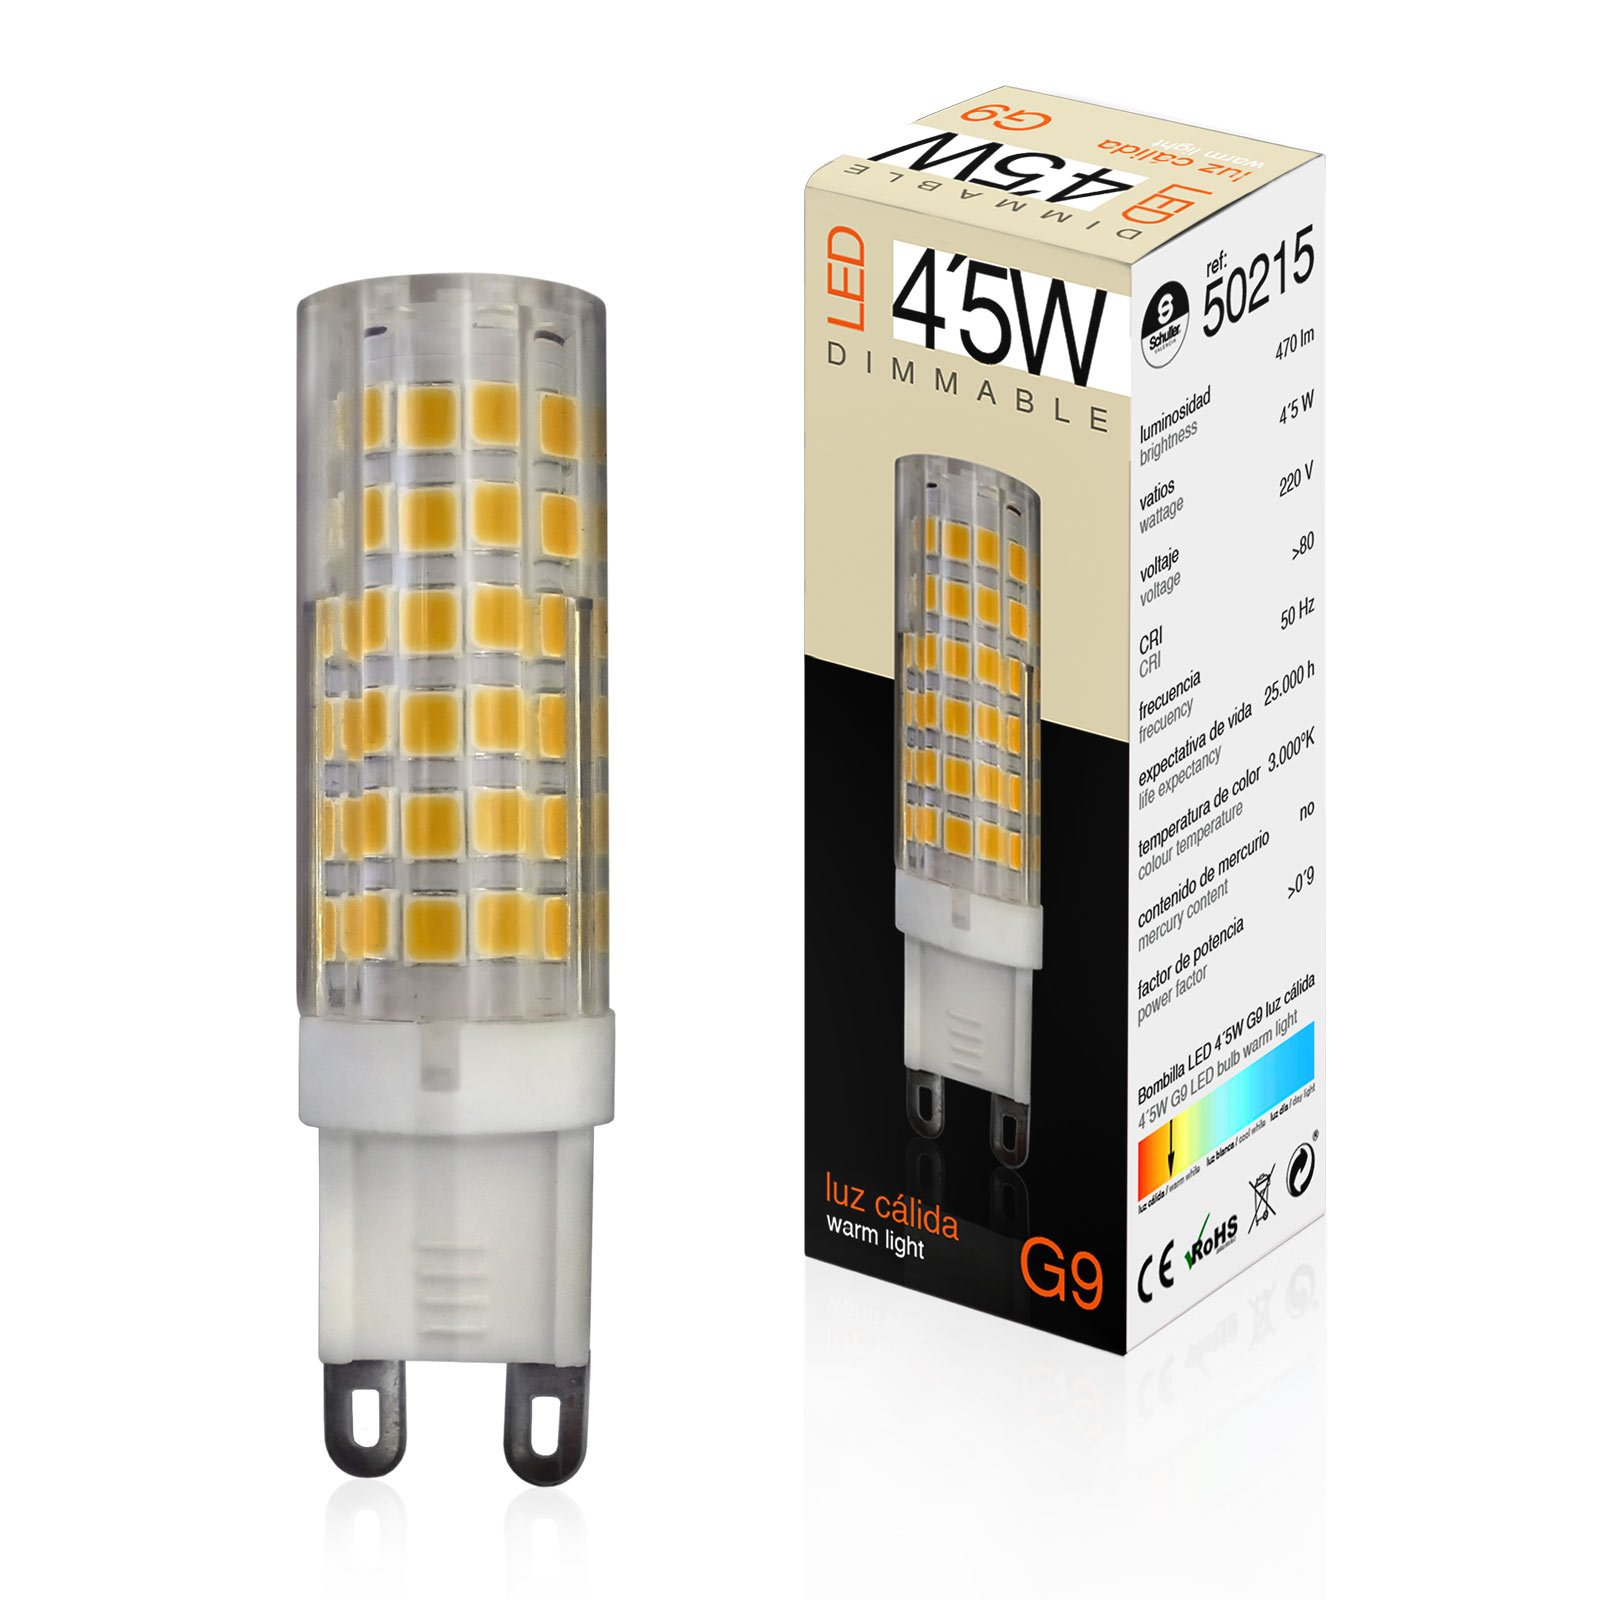 LED-stiftpære G9 4,5 W 3 000 K dimbar